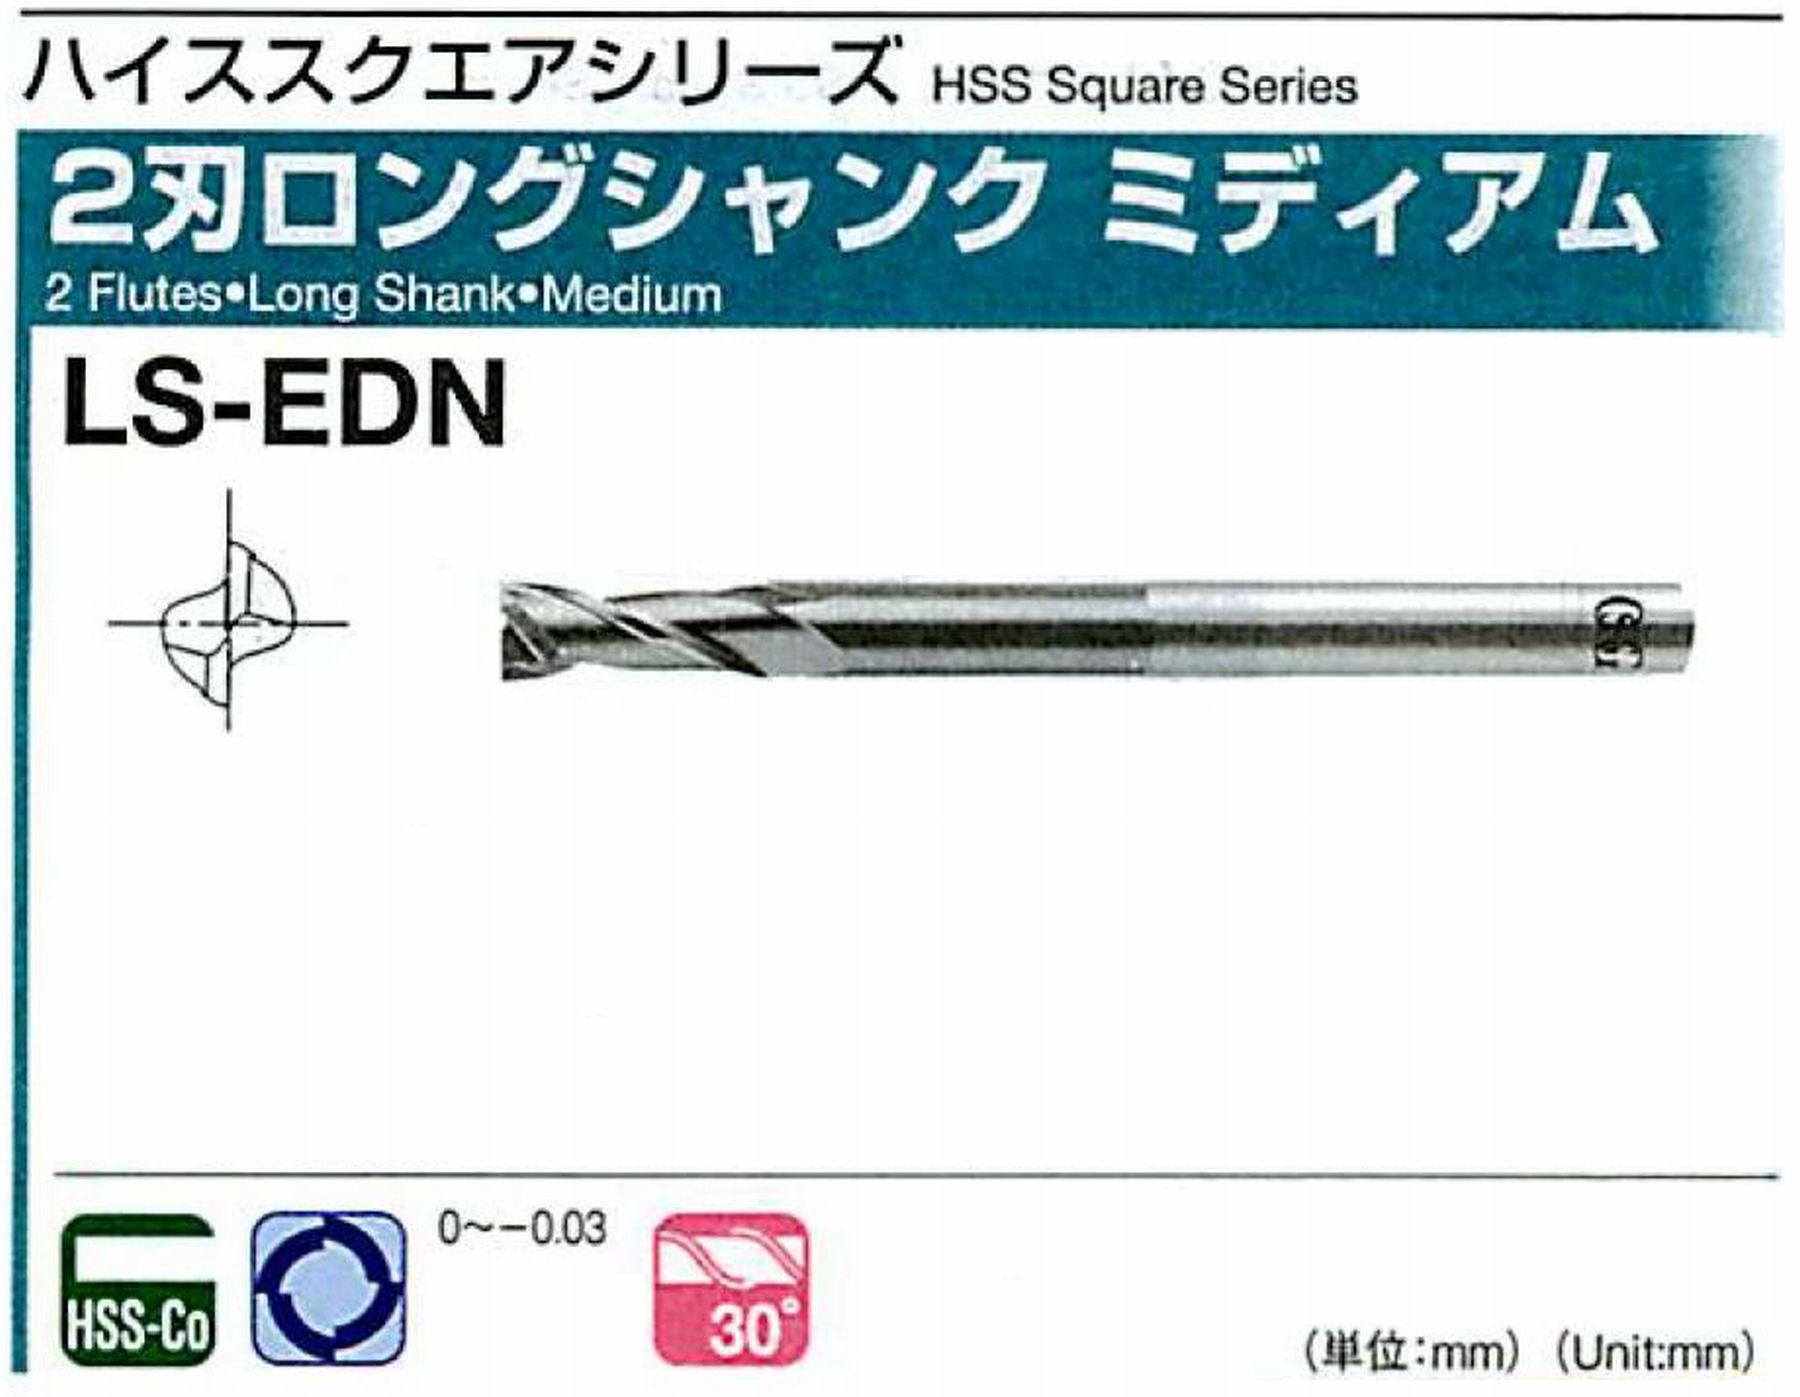 オーエスジー/OSG 2刃ロングシャンク ミディアム LS-EDN 外径40 全長235 刃長65 シャンク径32mm